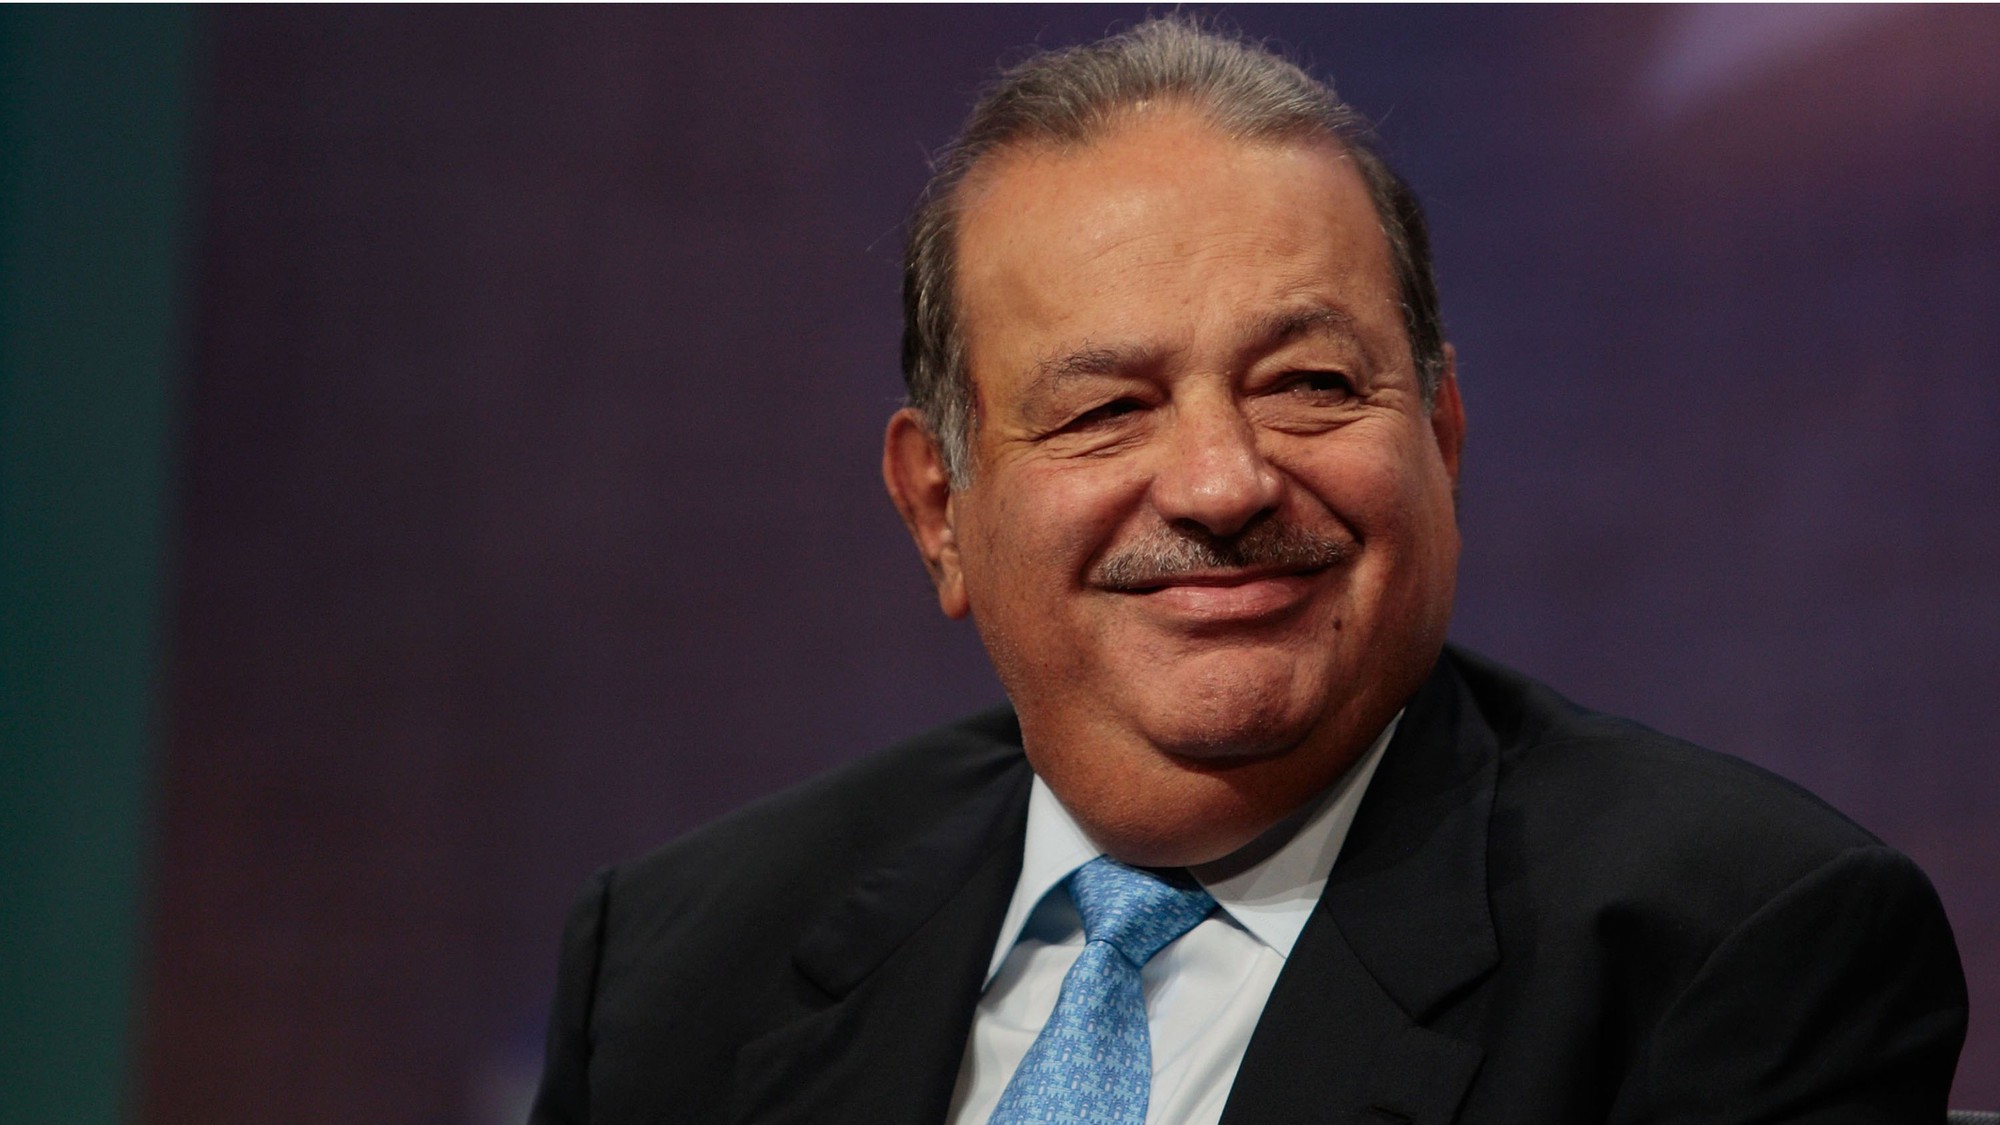 Carlos Slim sở hữu lượng lớn công ty tại Mexico thông qua đế chế khổng lồ Grupo Carso, đồng thời sở hữu cổ phần lớn tại America Movil - nhà mạng di động lớn nhất châu Mỹ La-tinh. Tỷ phú 77 tuổi sở hữu tài sản 63,5 tỷ USD.